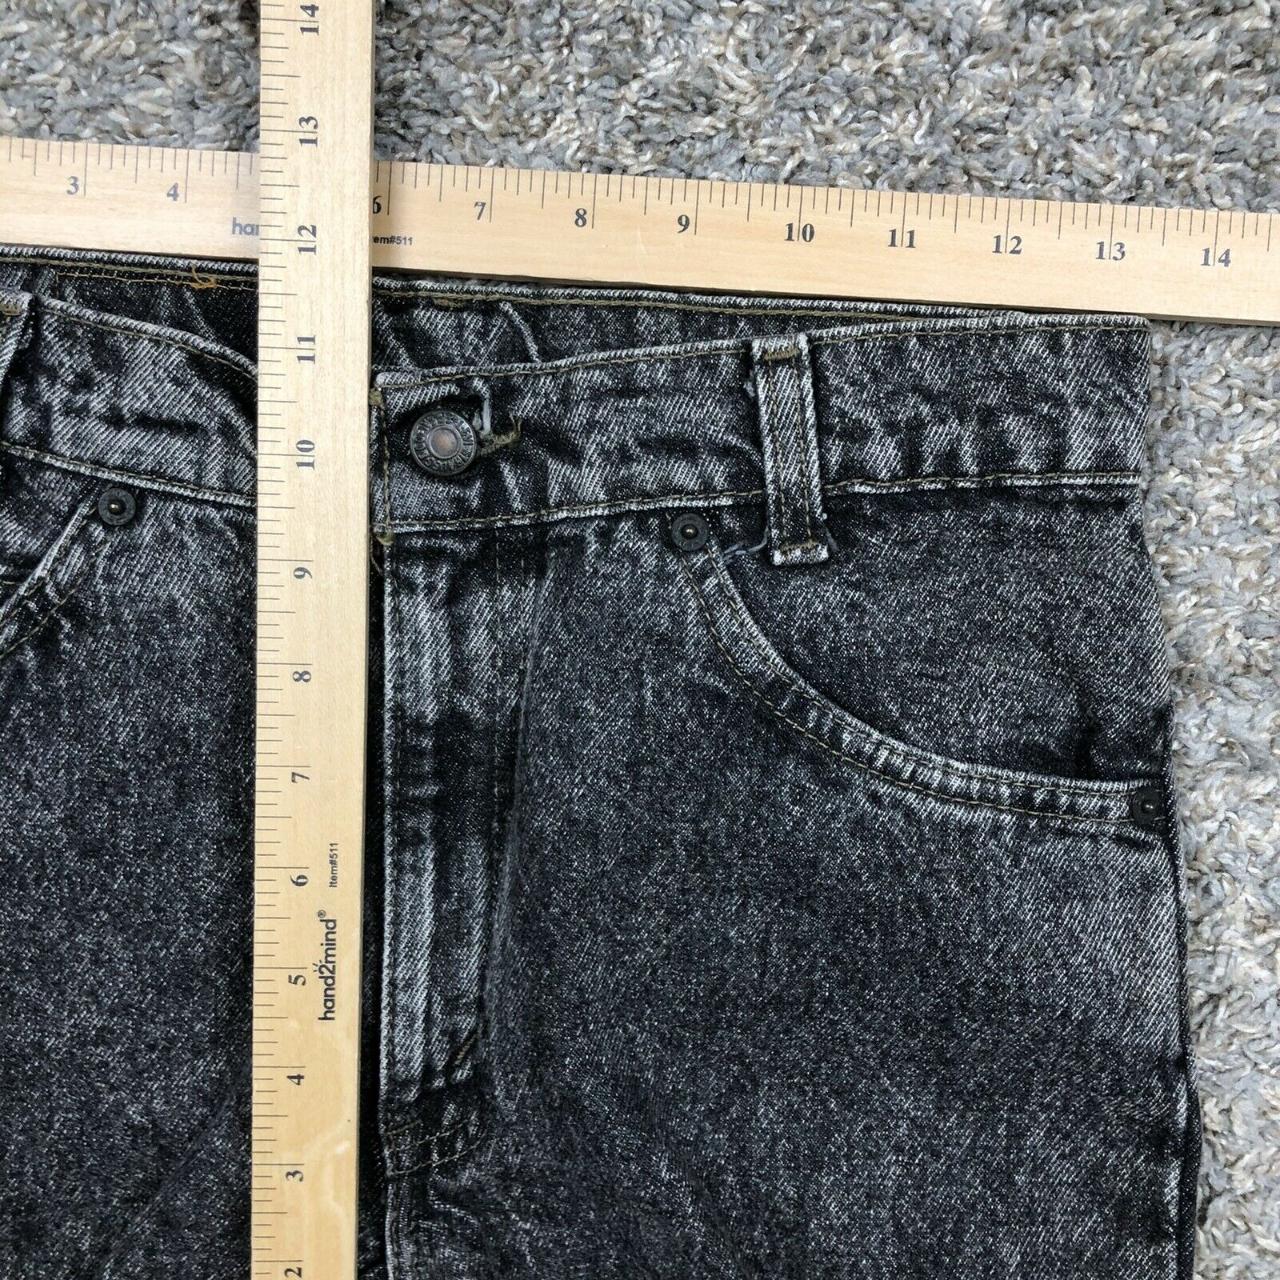 Vintage Levis Women’s 550 Student Fit Jeans Size... - Depop